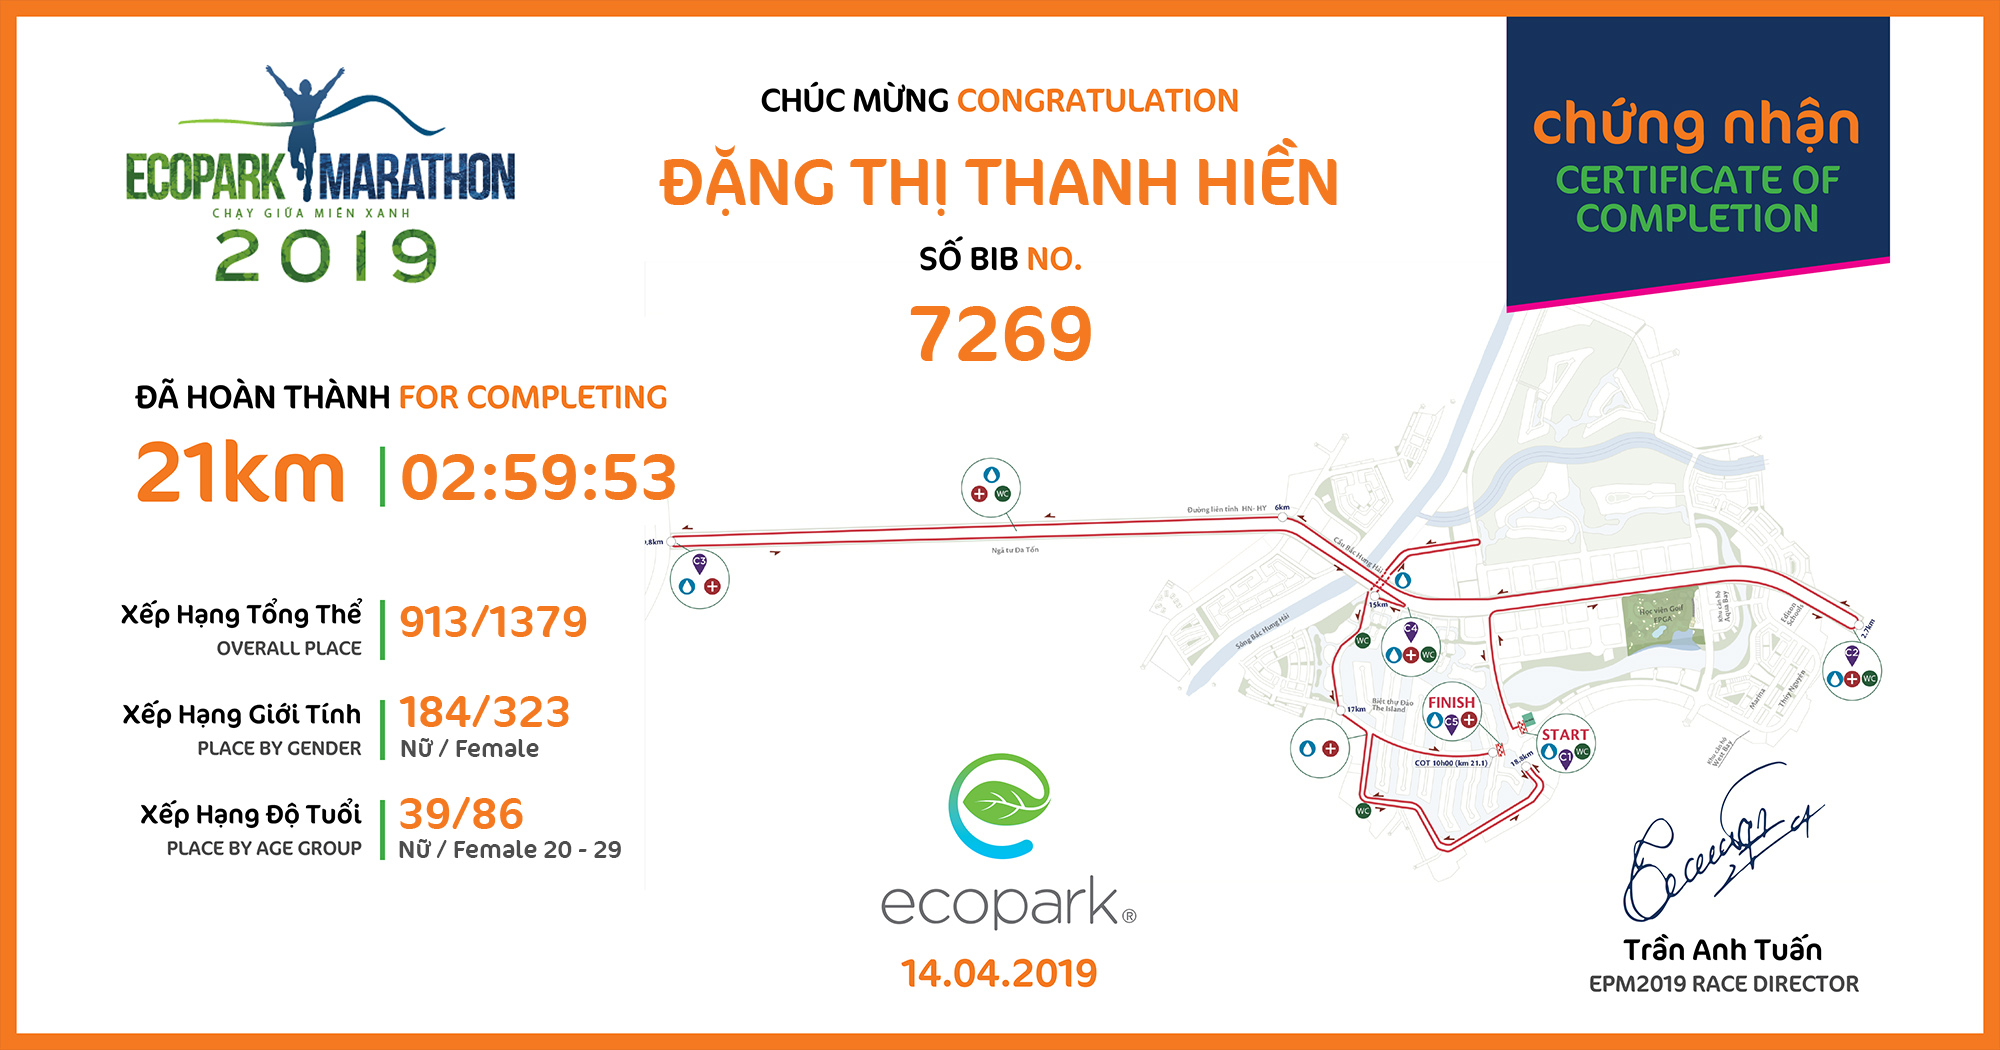 7269 - Đặng Thị Thanh Hiền